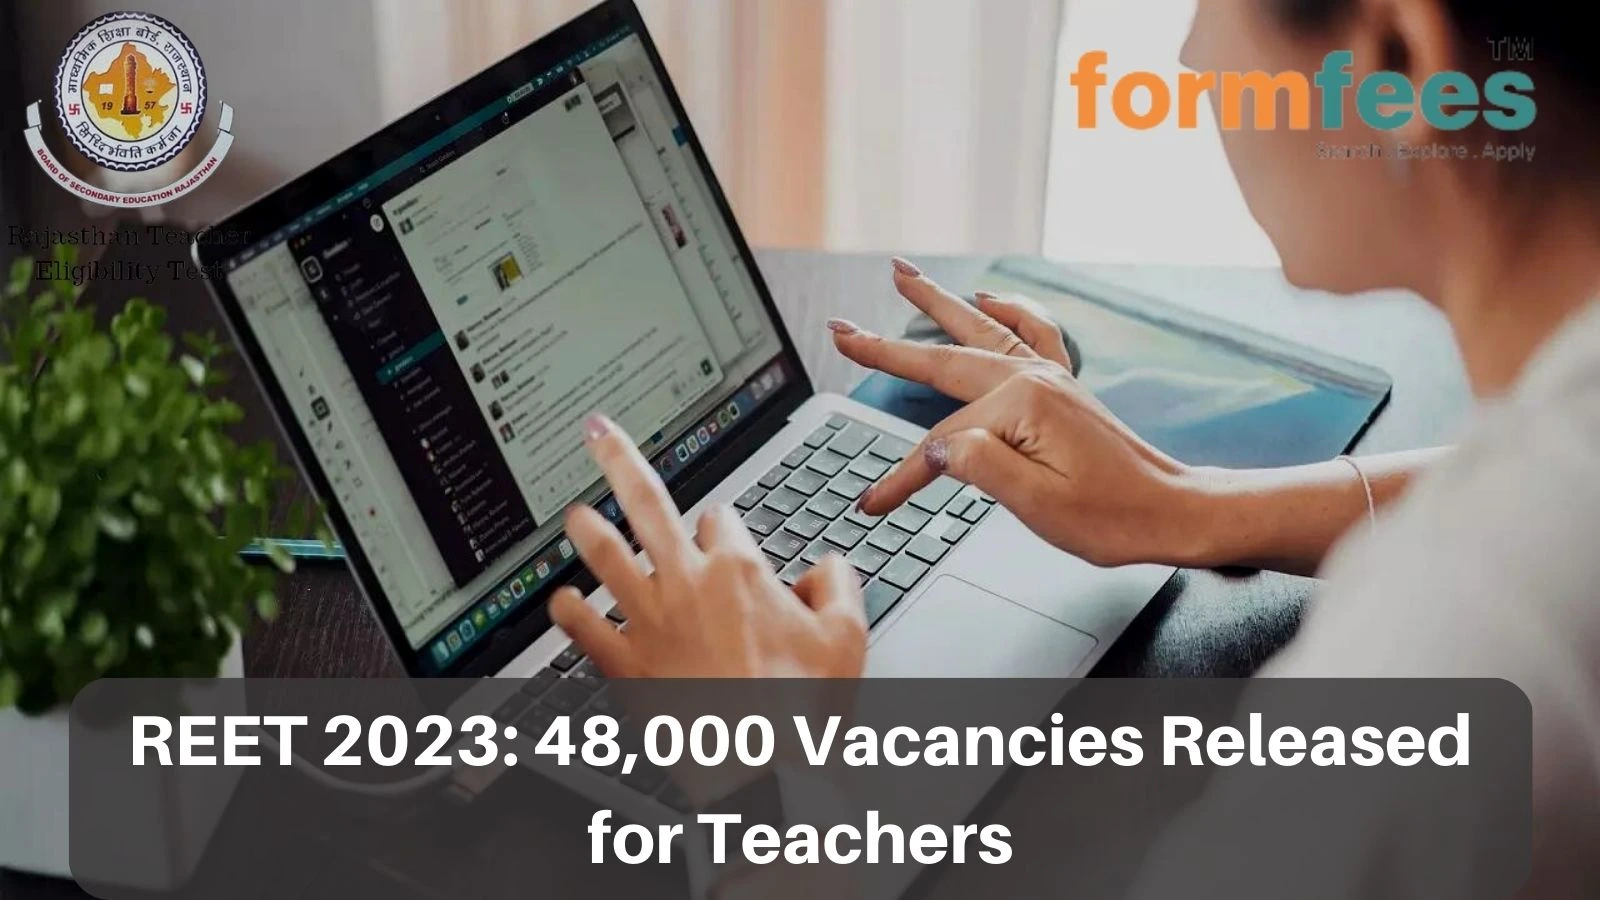 REET 2023: 48,000 Vacancies Released for Teachers